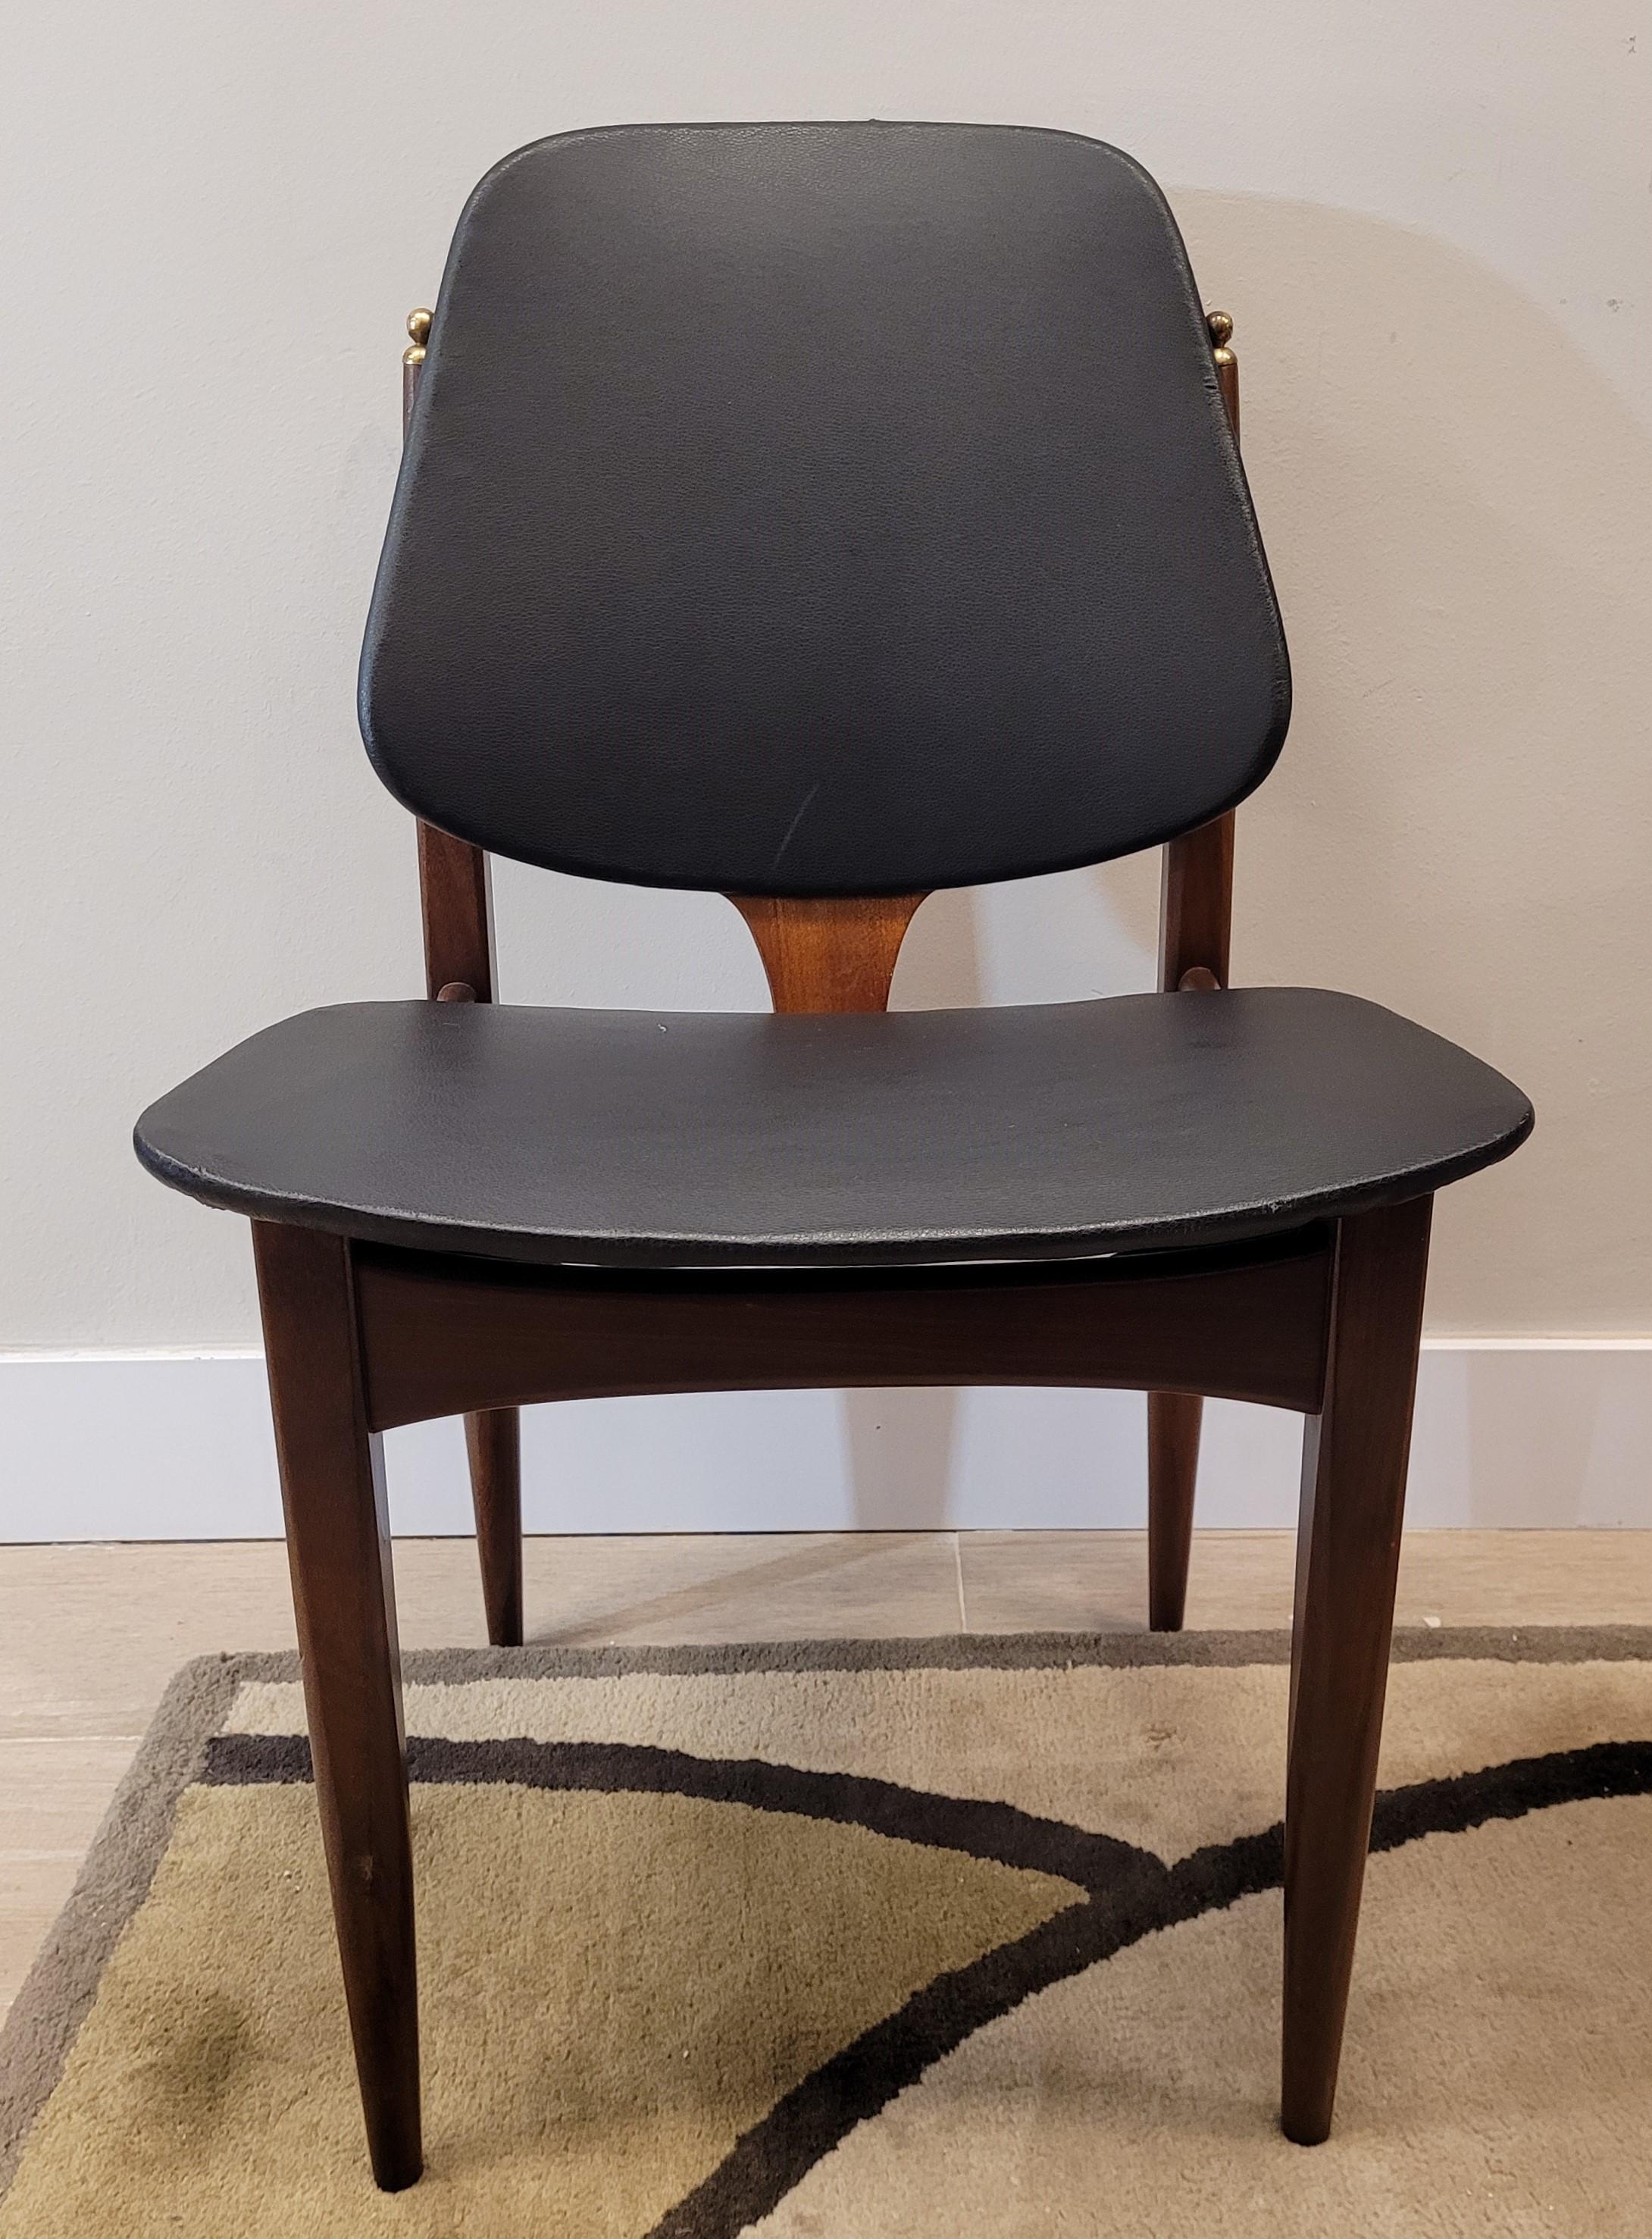 Exquisit und schön  Ein Paar Stühle im Midcentury-Design, hergestellt von der englischen Manufaktur Elliots of Newbury, in Berkshire. Jeder Stuhl besteht aus Teakholz und ist mit schwarzem, satiniertem Leder gepolstert. Charakteristische Elemente